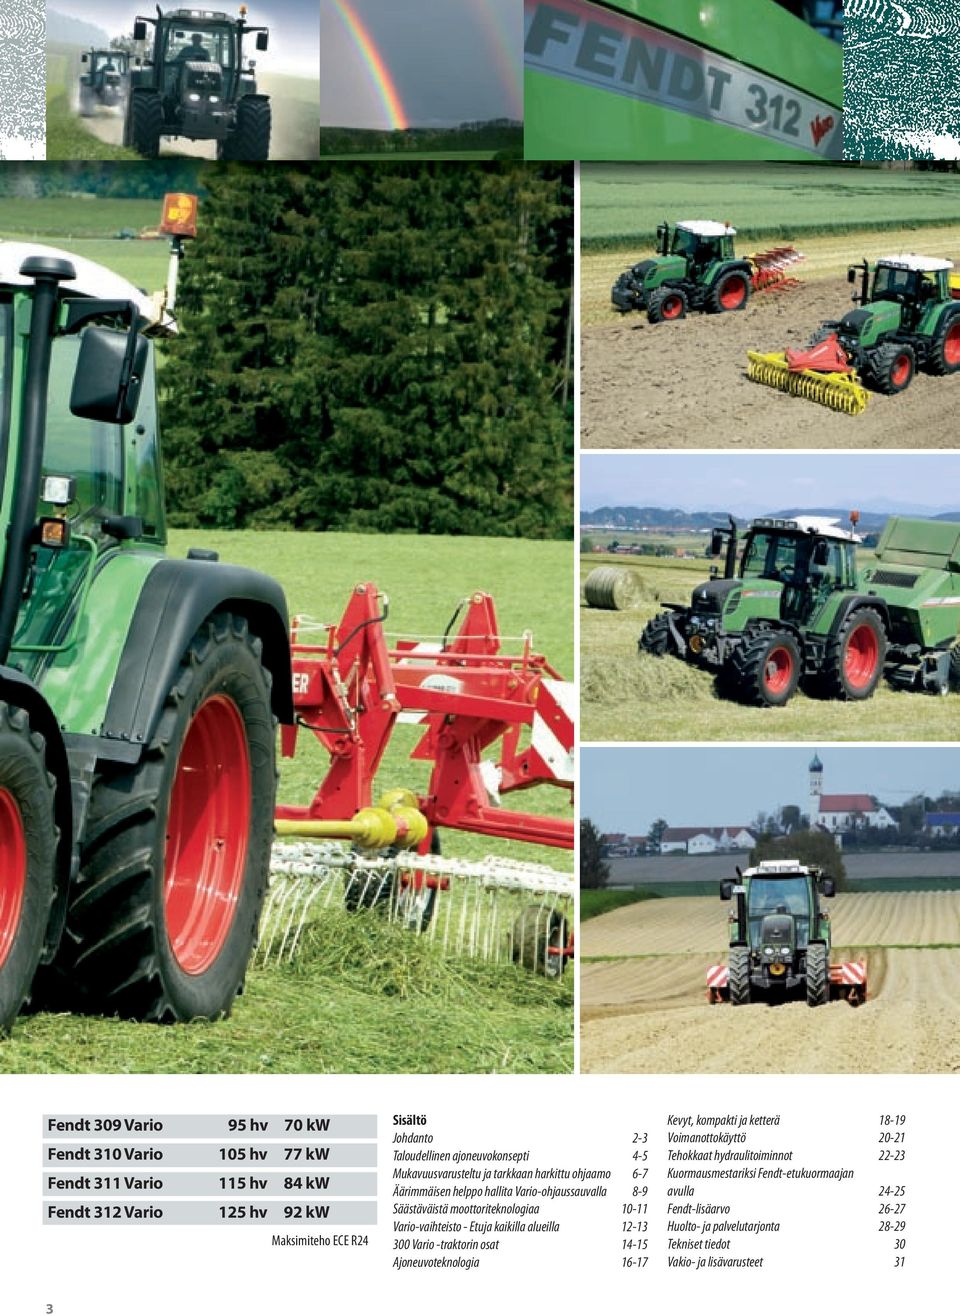 Vario-vaihteisto - Etuja kaikilla alueilla 12-13 300 Vario -traktorin osat 14-15 Ajoneuvoteknologia 16-17 Kevyt, kompakti ja ketterä 18-19 Voimanottokäyttö 20-21